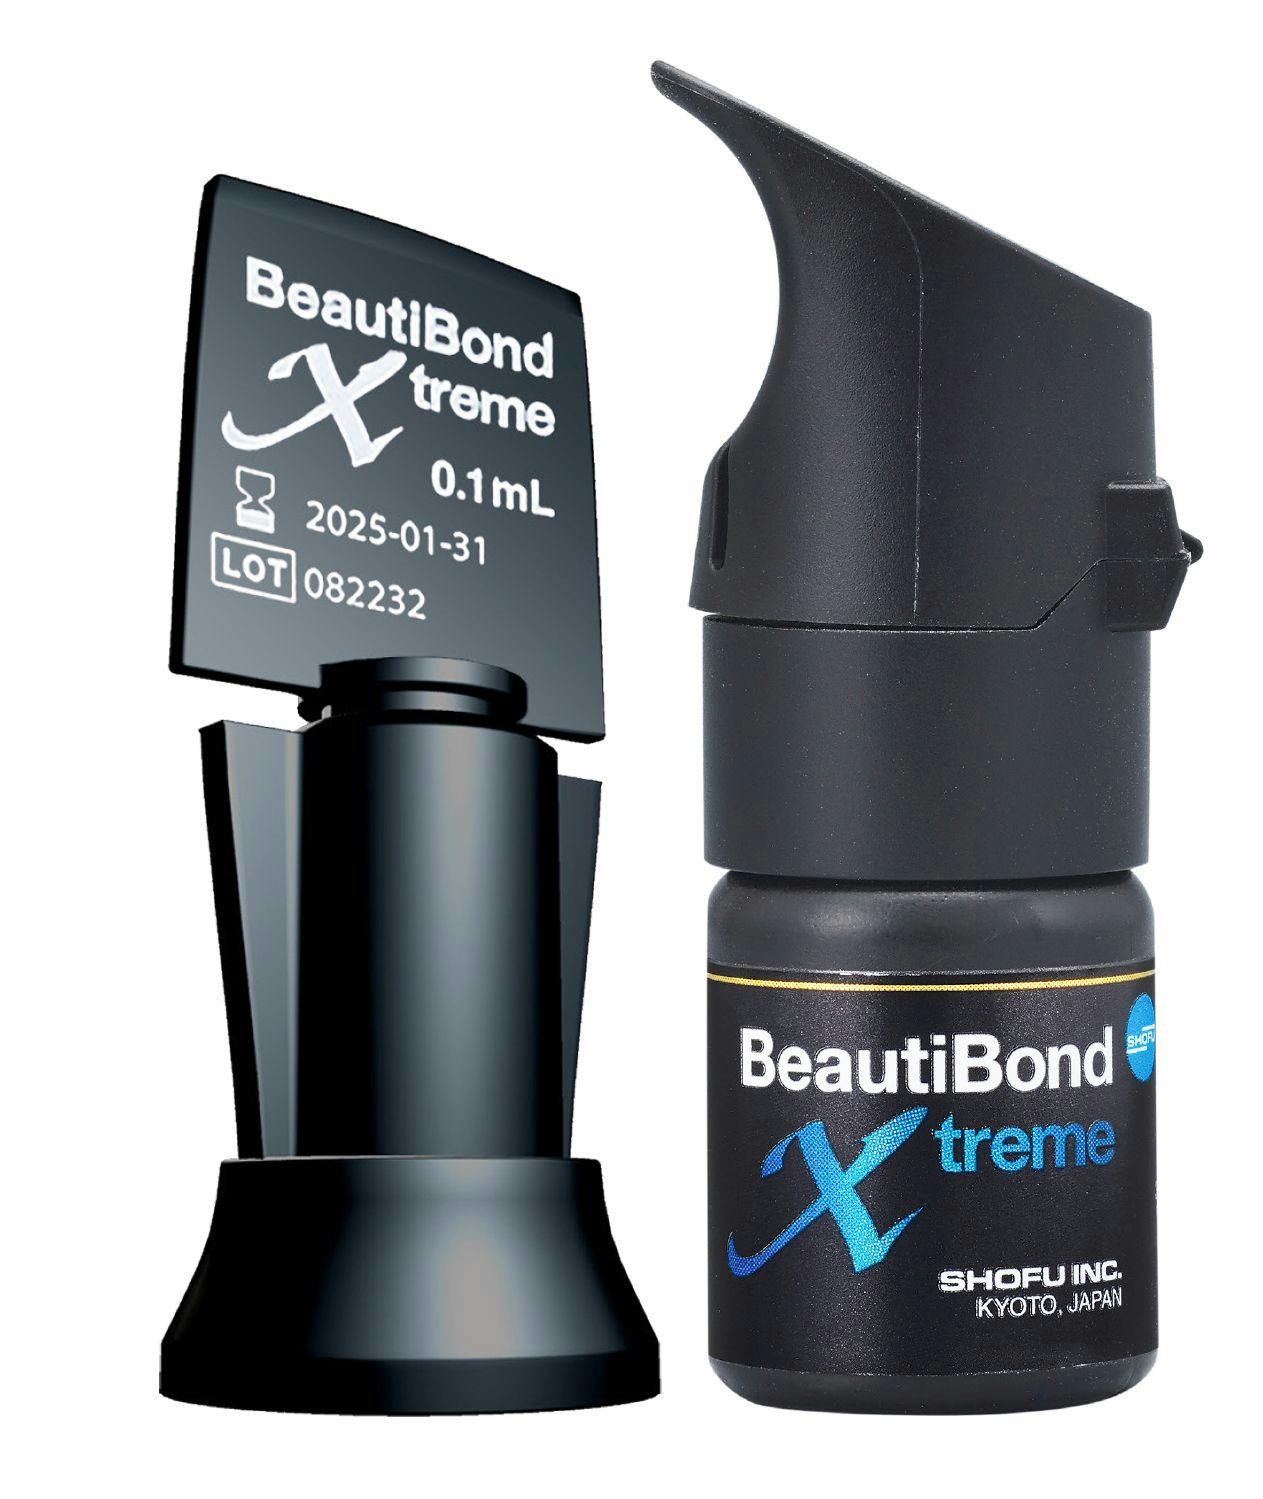 BeautiBond Xtreme from Shofu | Image Credit: © Shofu Dental Corporation